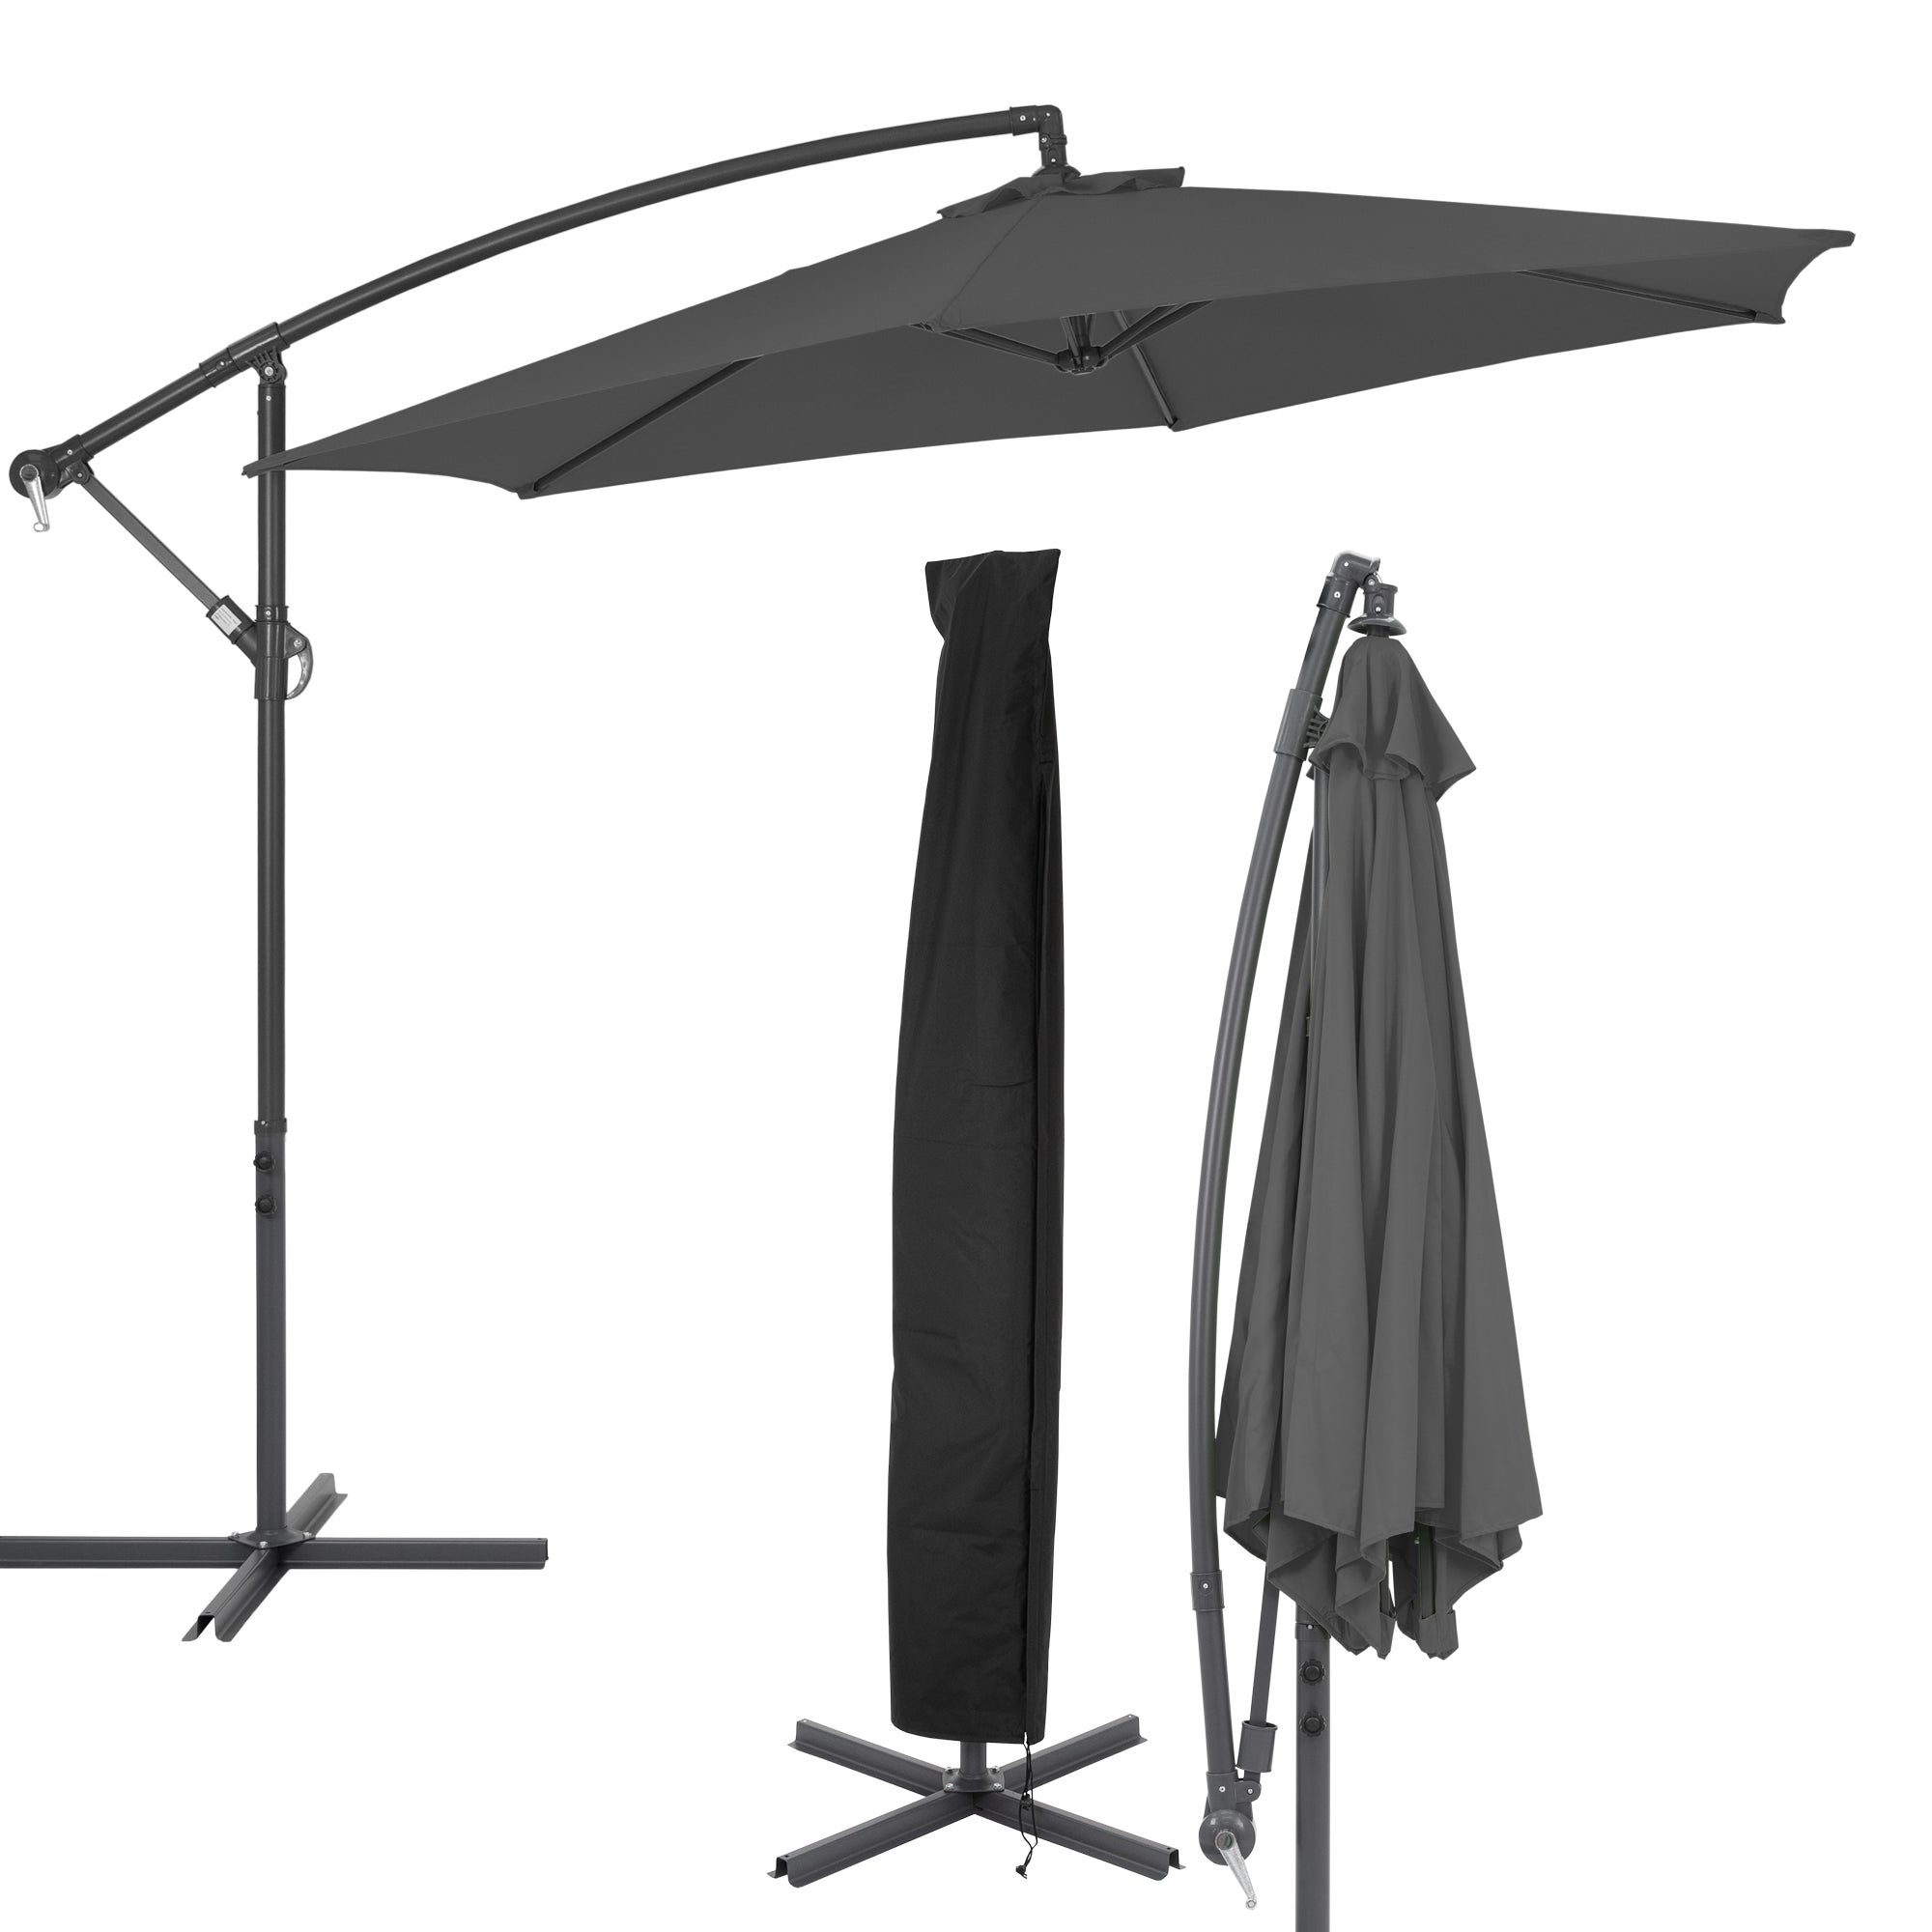 Housse de Protection pour parasols Manivelle Parapluie Housse/Parapluie Protection Contre Les Intempéries jusqu'à ø3m 